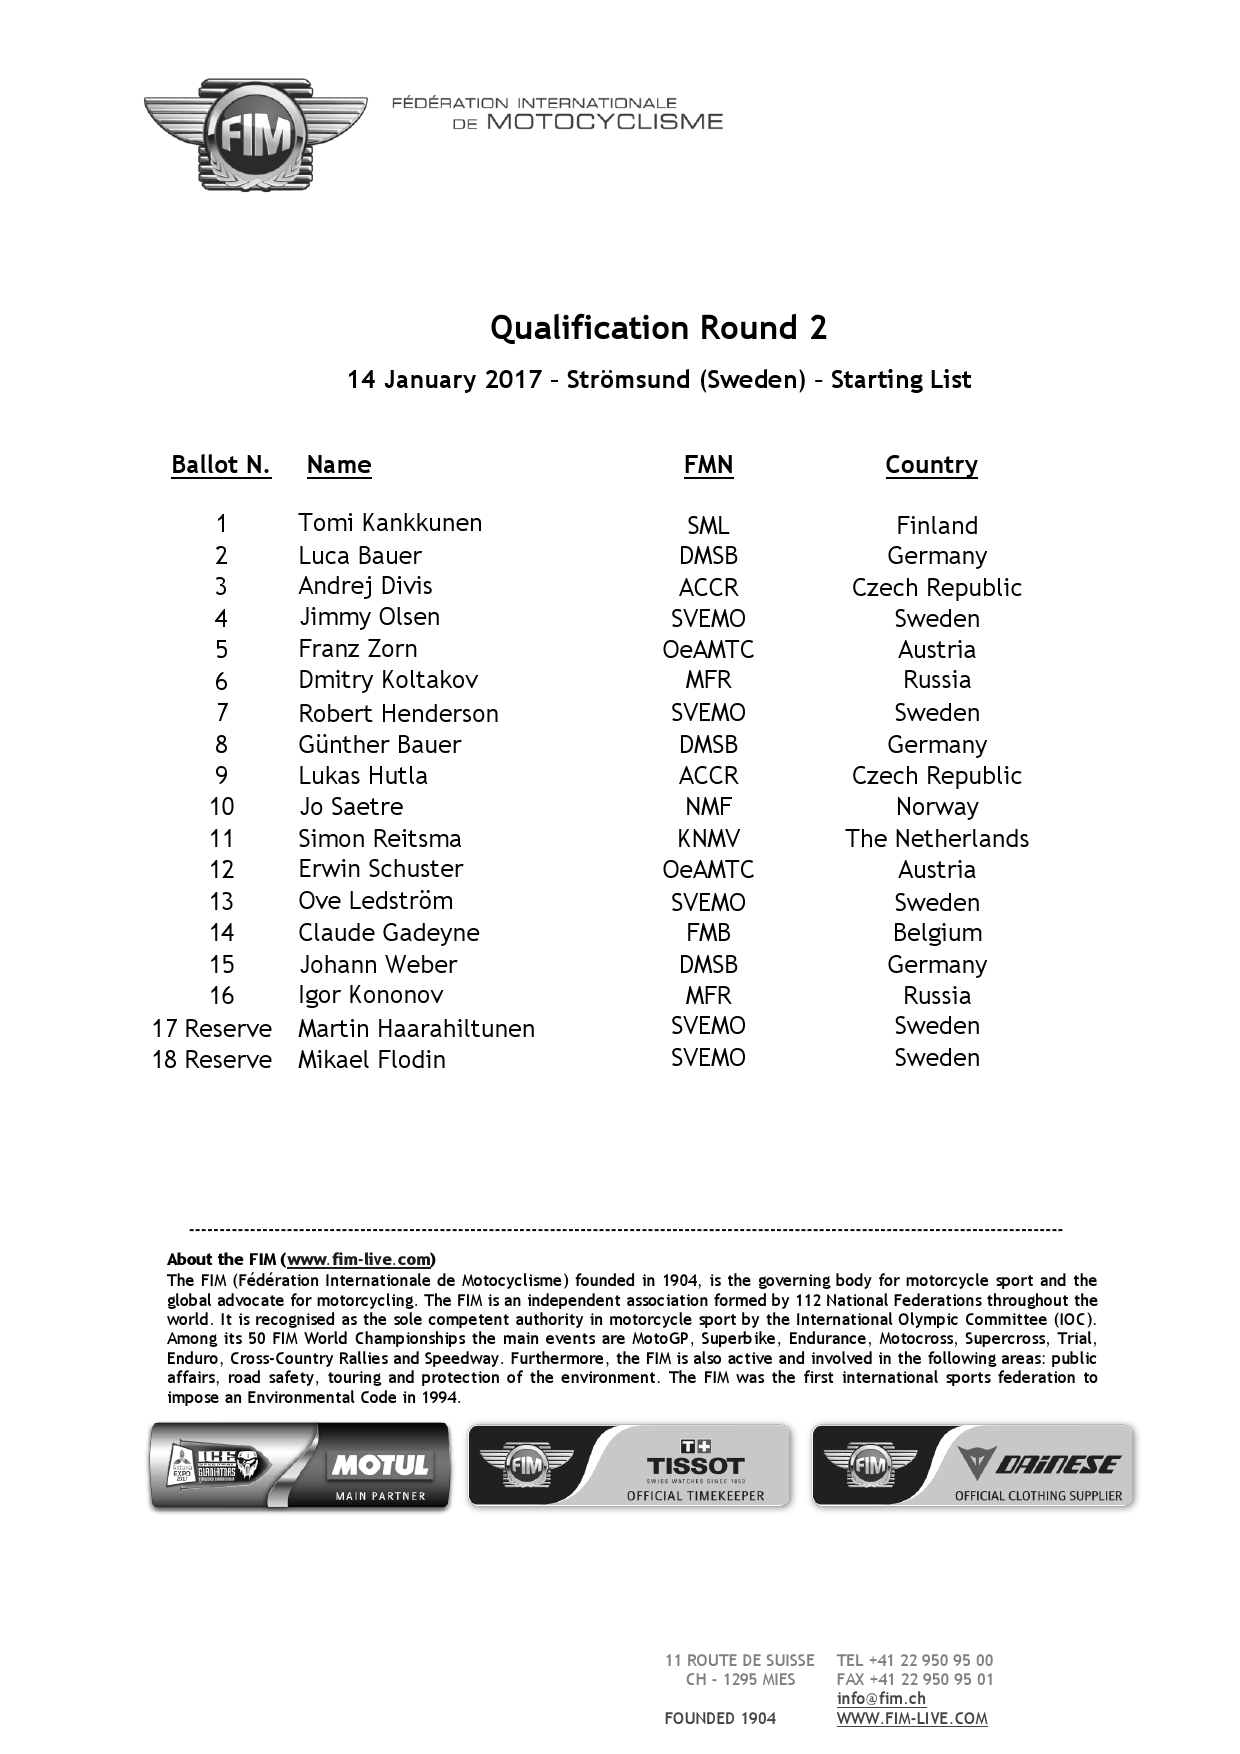 Списки участников квалификационного раунда FIM Ice Speedway Gladiators 2017, Швеция, 14 января